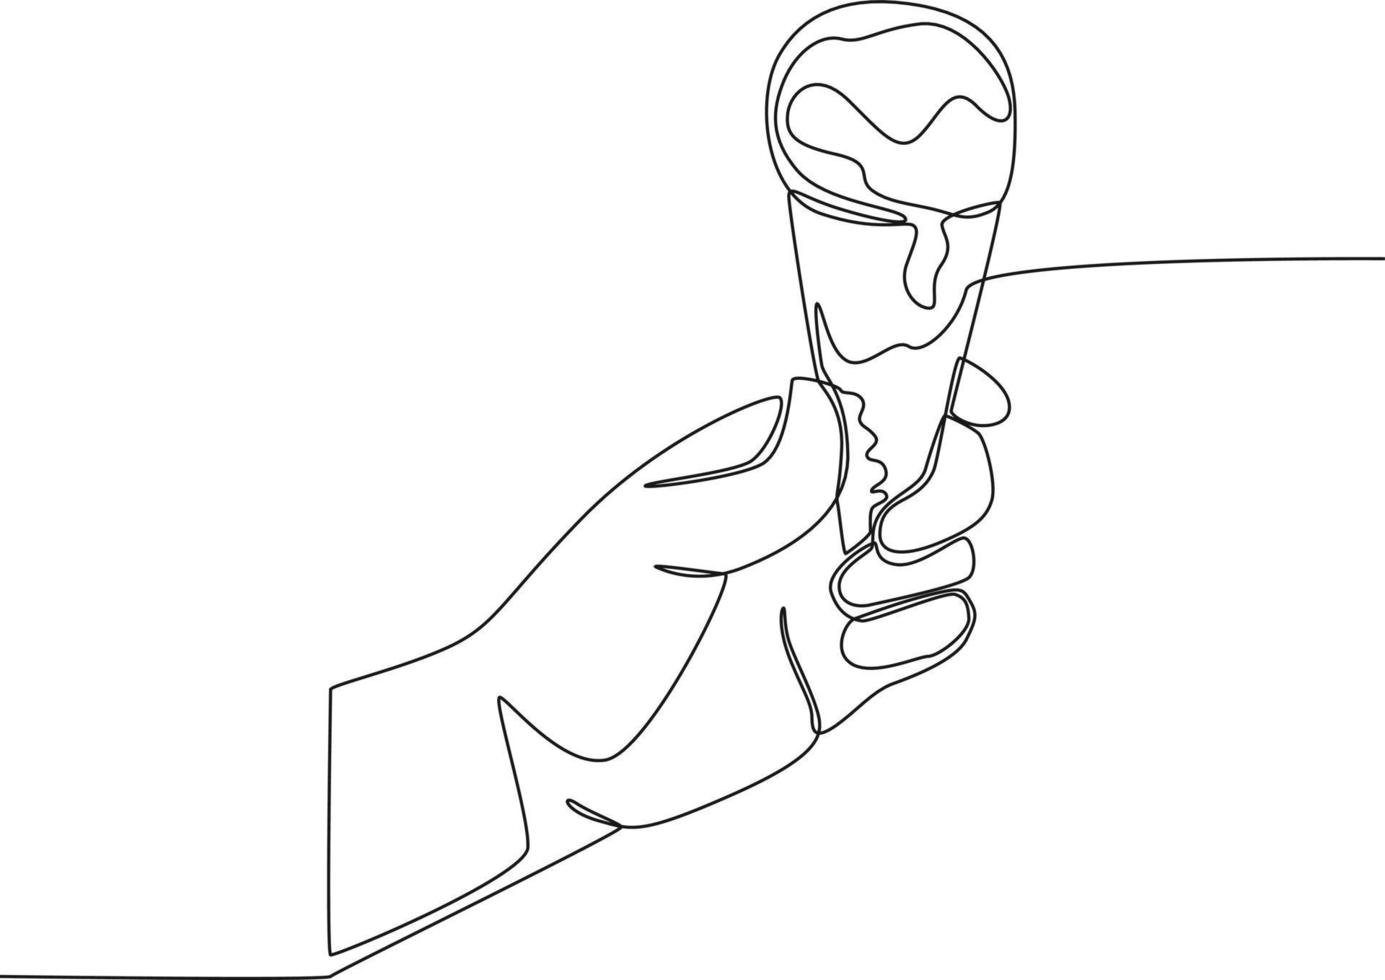 um desenho de linha contínua de mão segurando sorvete no cone. festa de Verão. ilustração gráfica de design de desenho de linha única. vetor